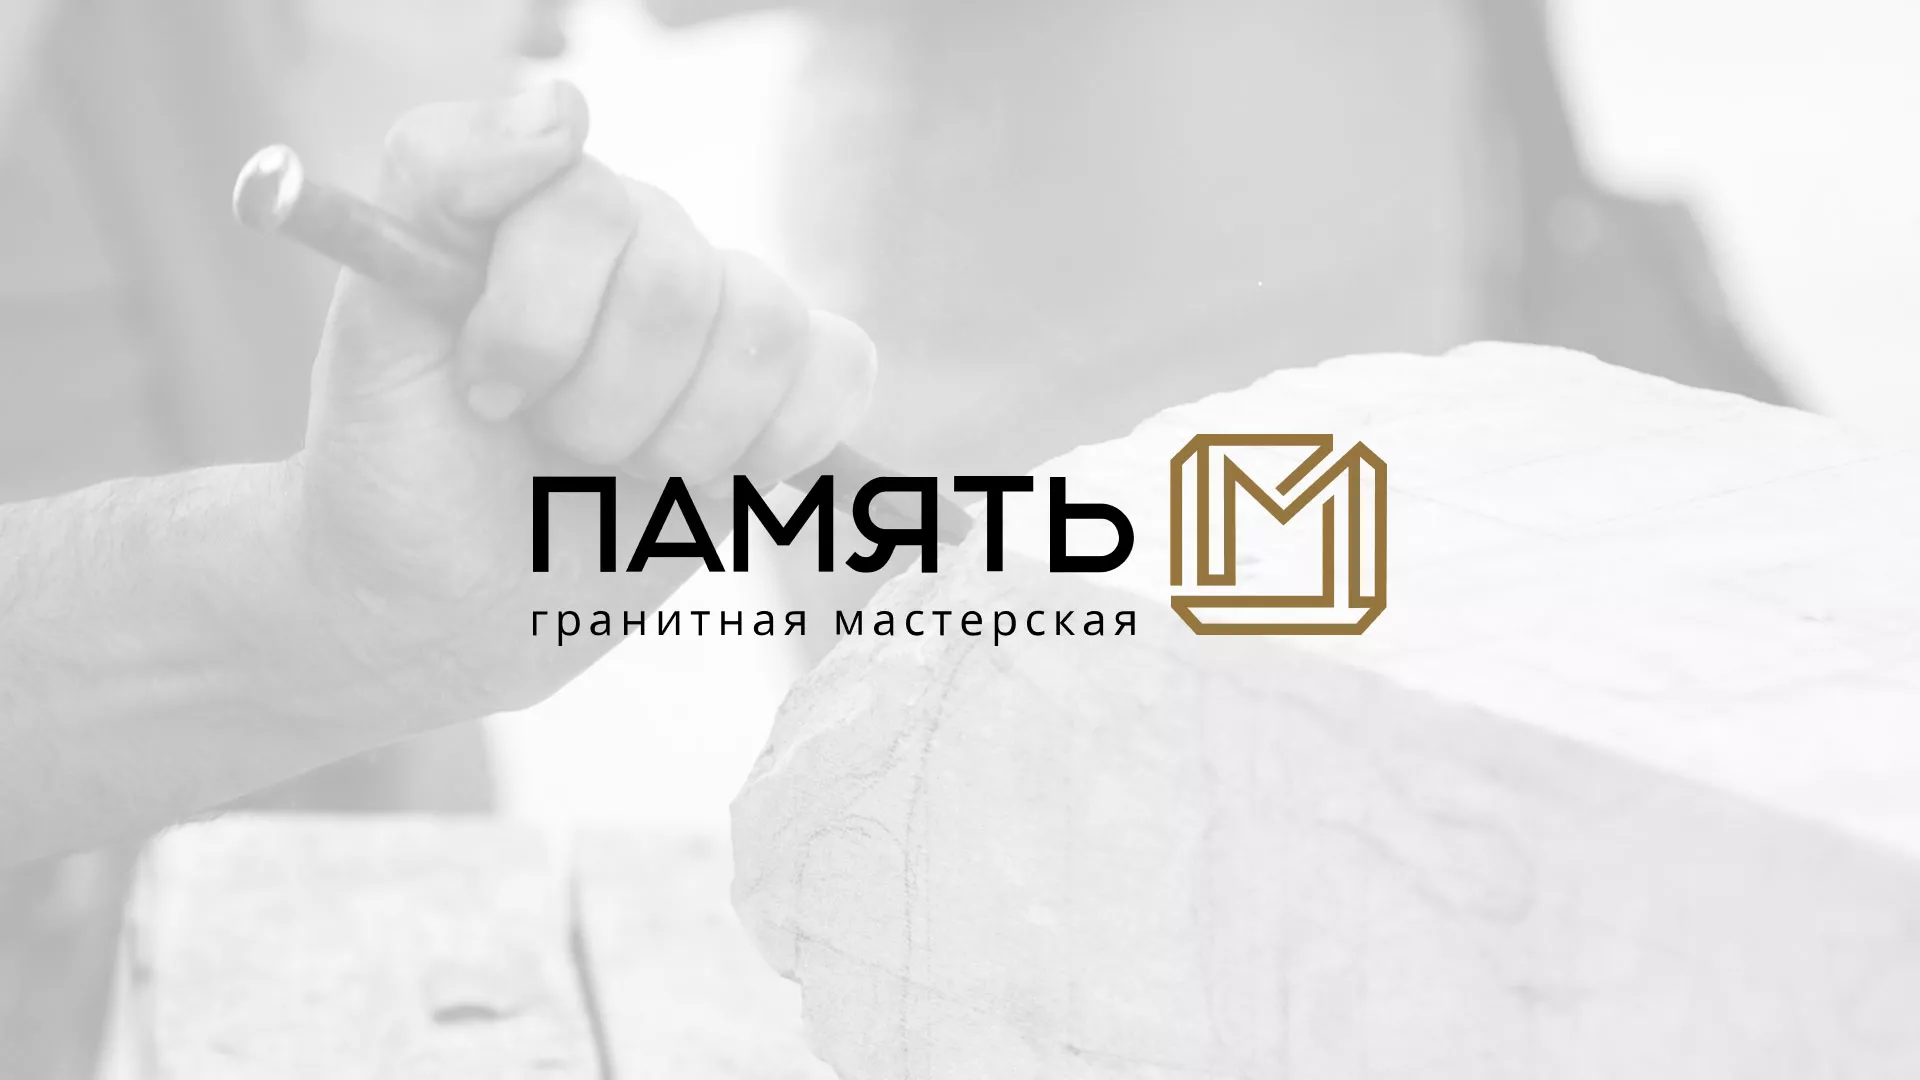 Разработка логотипа и сайта компании «Память-М» в Твери